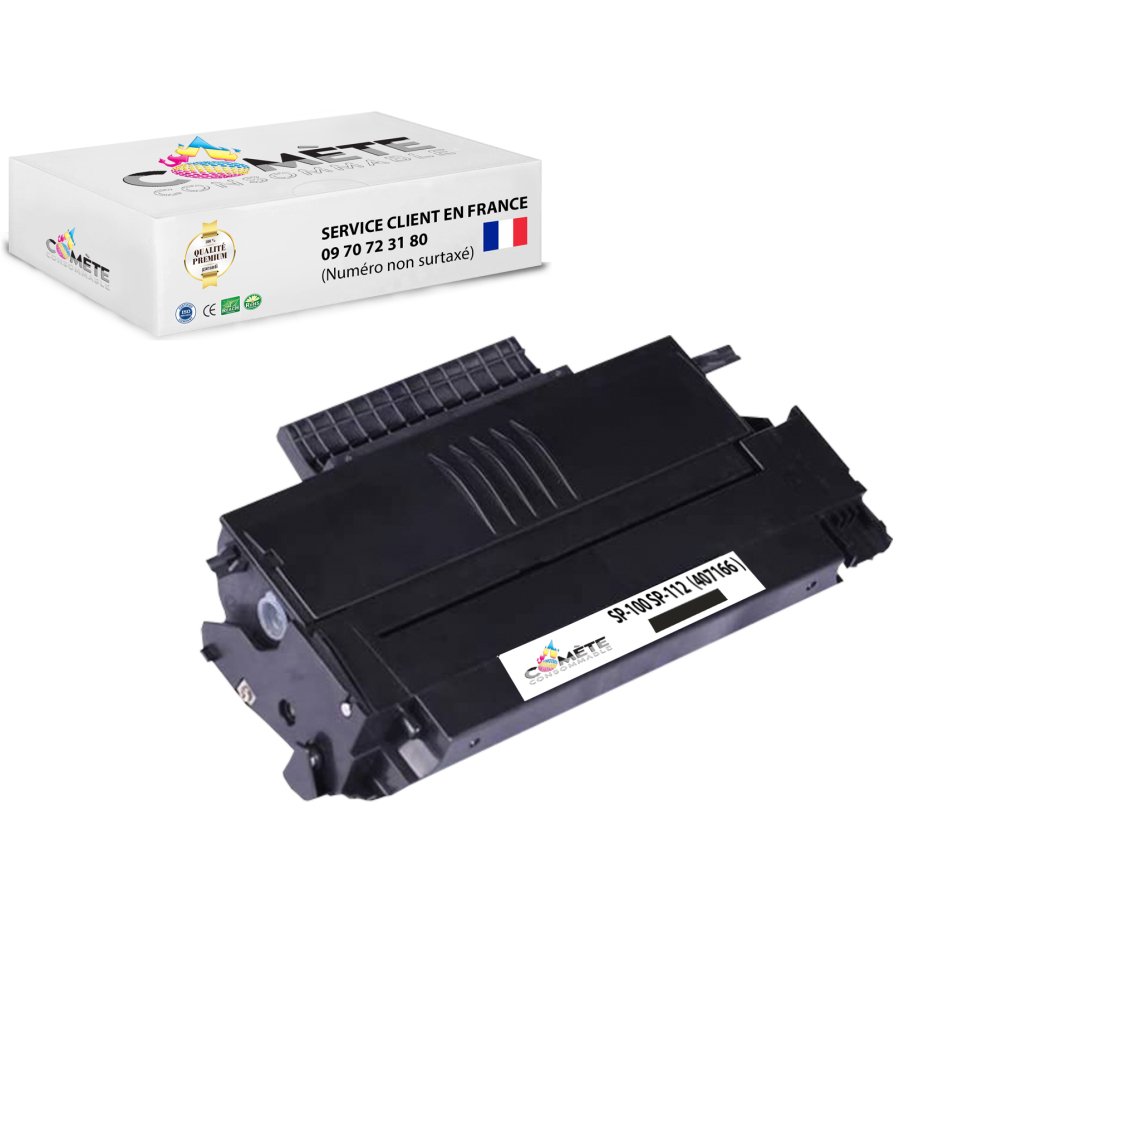 Comete Consommable - SP100 1 Toner compatible avec RICOH SP100 407166 Noir - Imprimante Laser